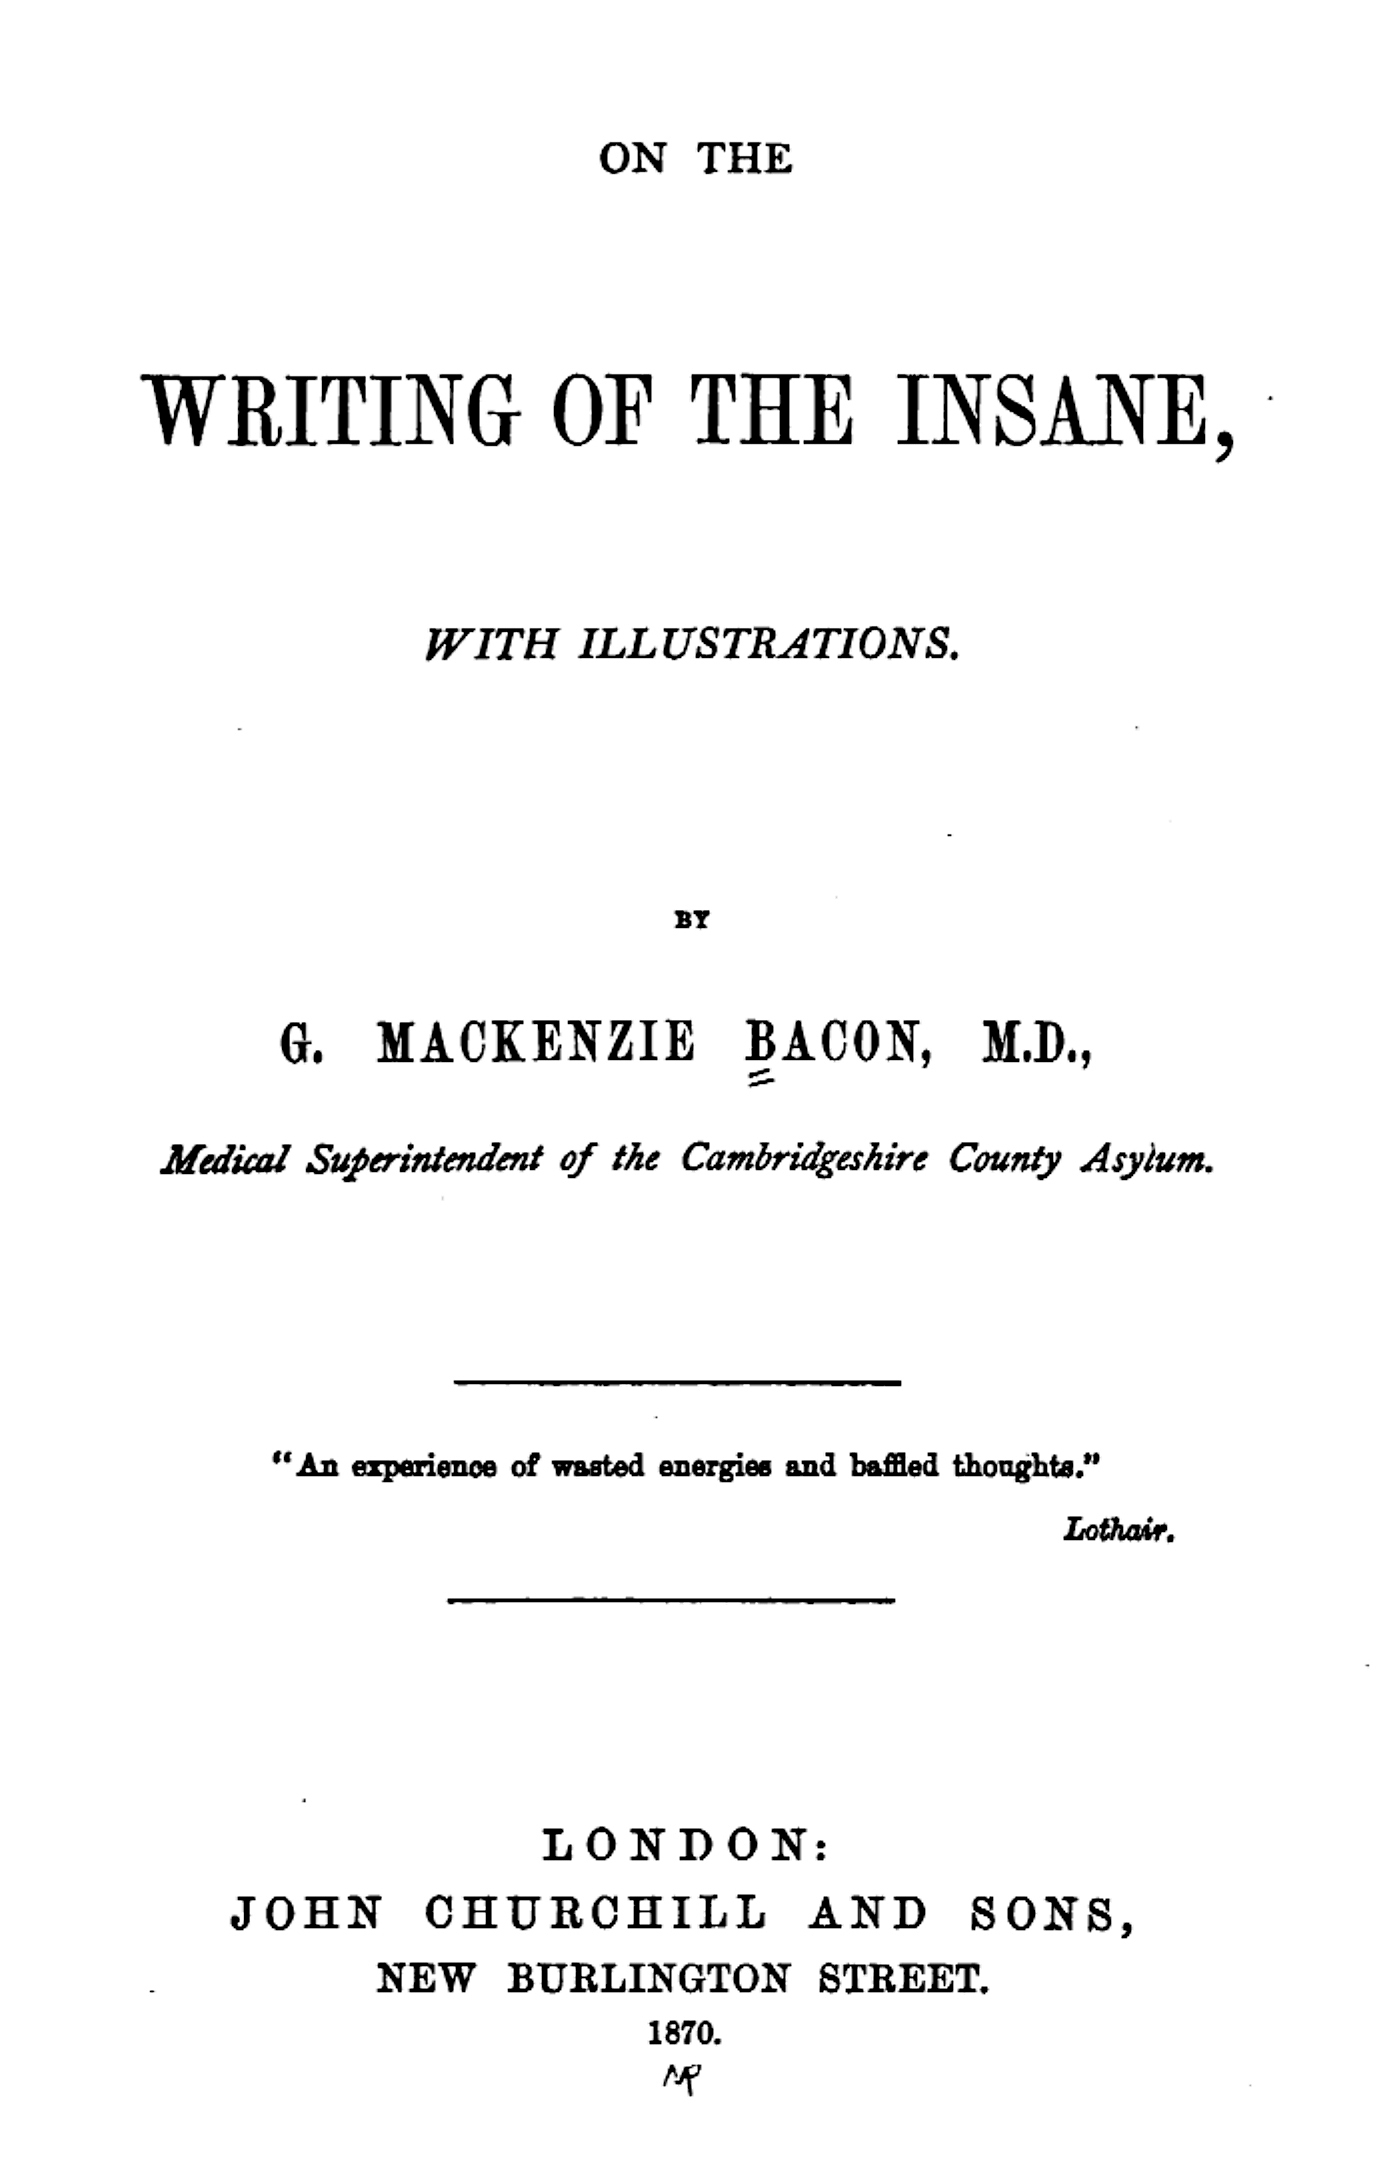 On the writing of the insane - onwritinginsane00bacogoog.pdf